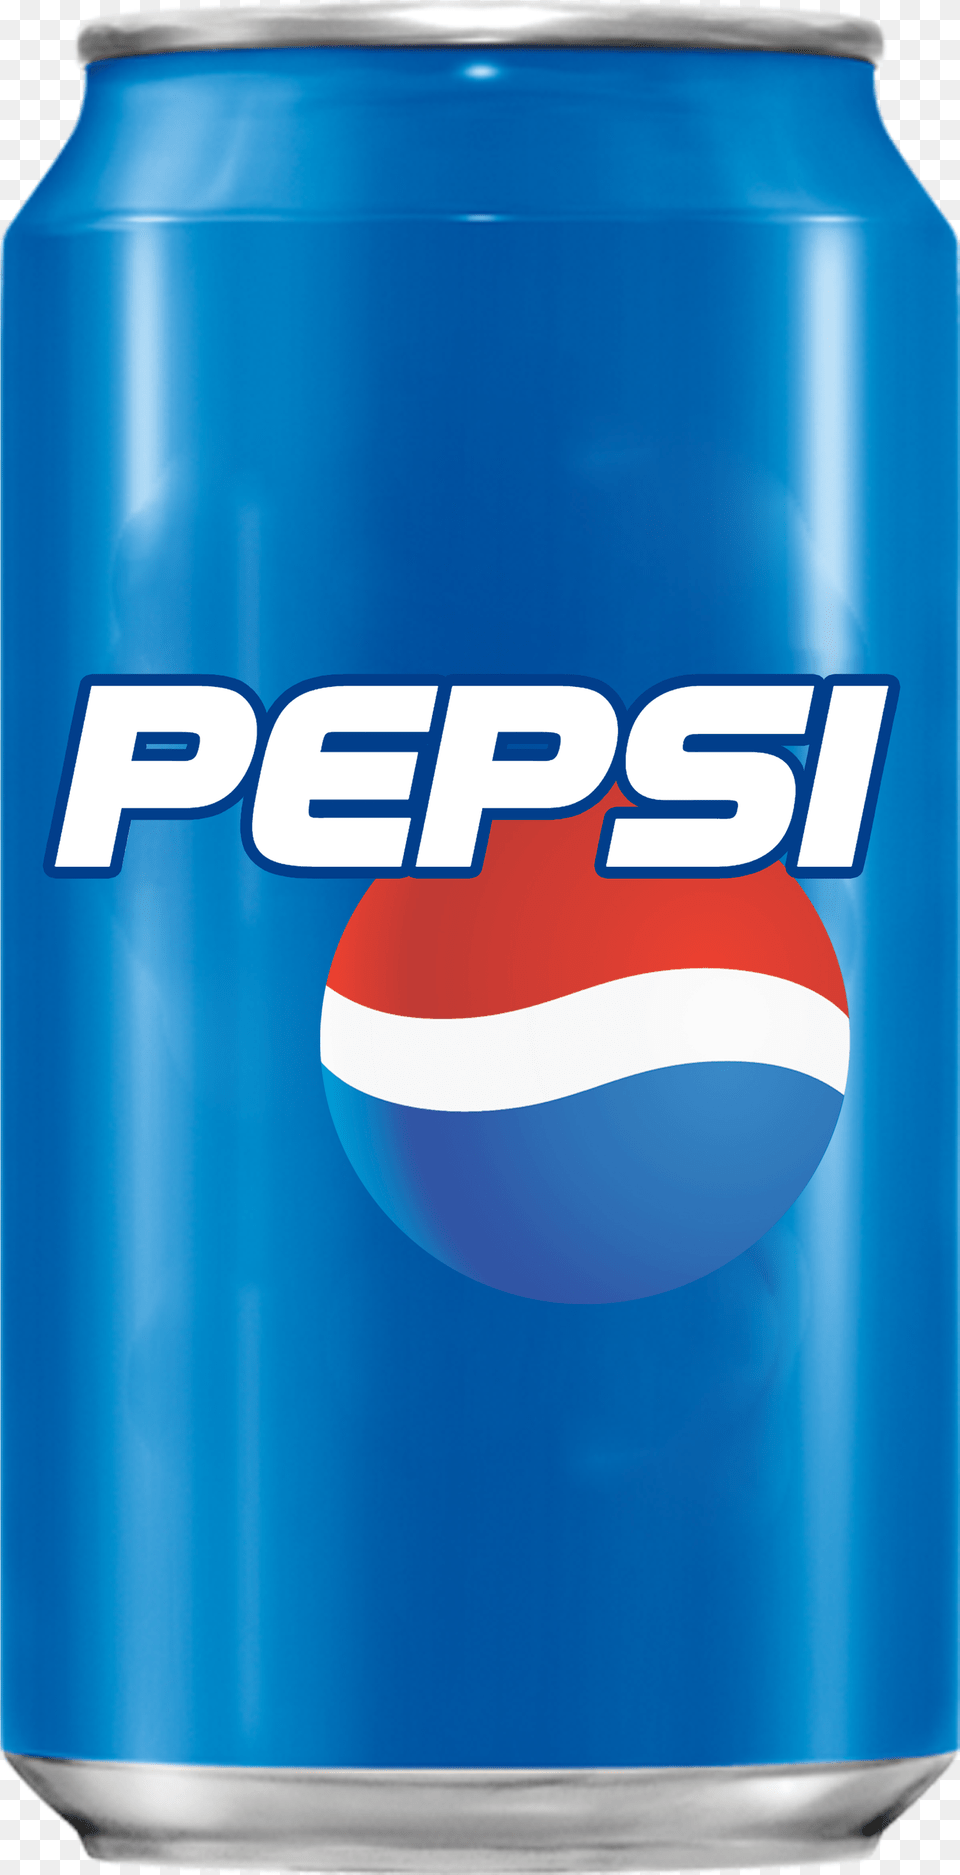 Pepsi Png8942 Pepsi, Can, Tin, Beverage, Soda Png Image